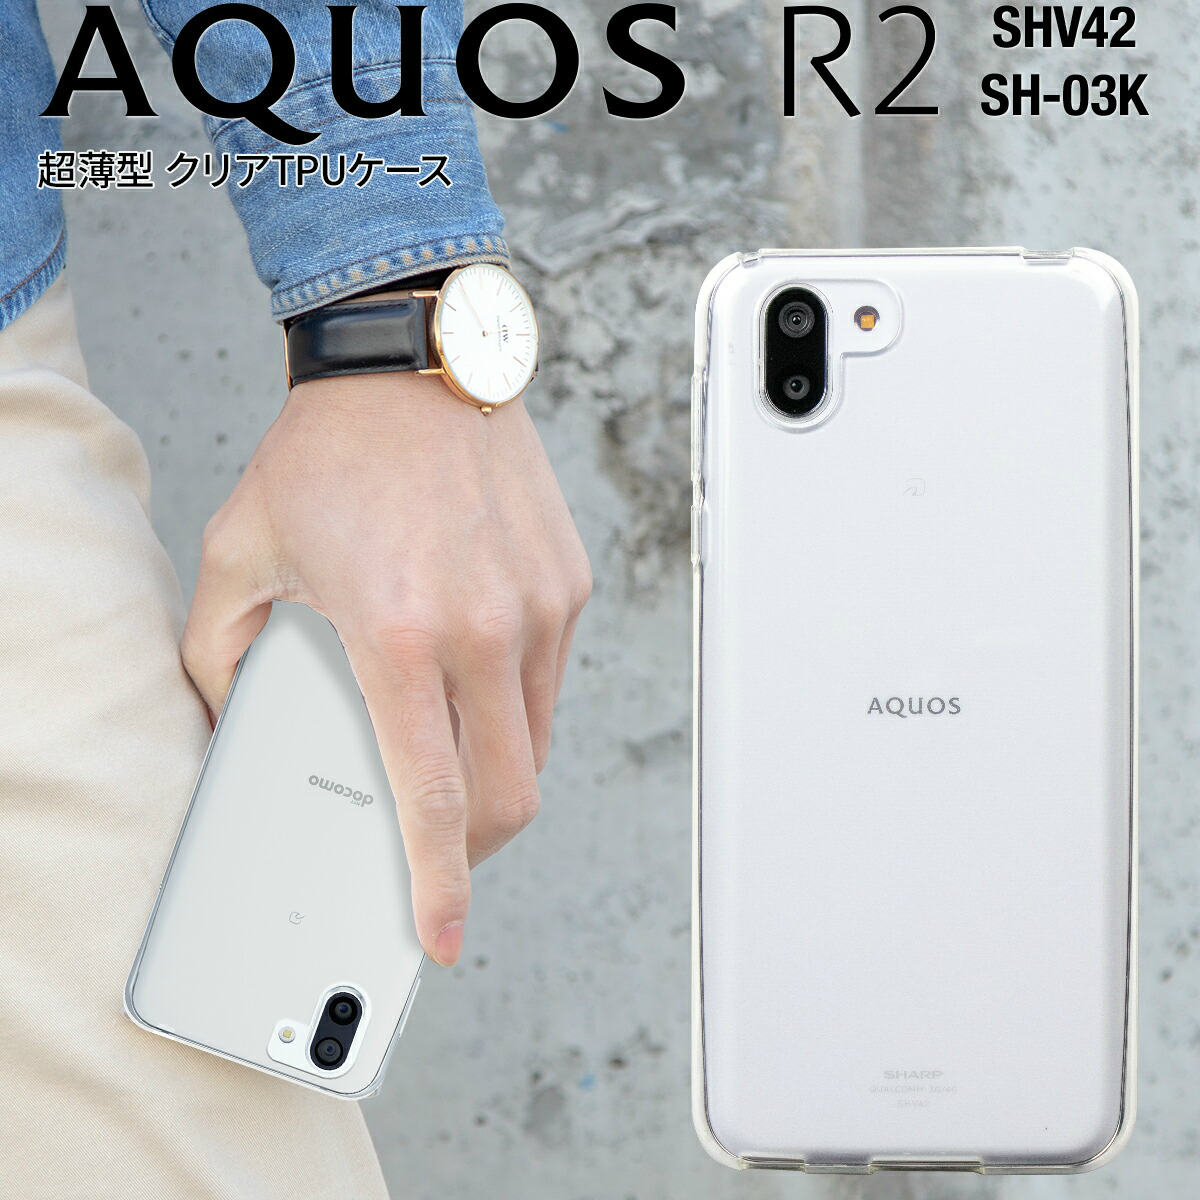 【最大30 OFFクーポン】 AQUOS R2 スマホケース 韓国 SH-03K SHV42 スマホ ケース カバー TPU クリアケース アクオス TPUケース ソフトケース SH-03K SHV42 シンプル アンドロイド スマートフォン スマホ カバー 携帯 ポイント消化 sale 携帯ケース 携帯カバー